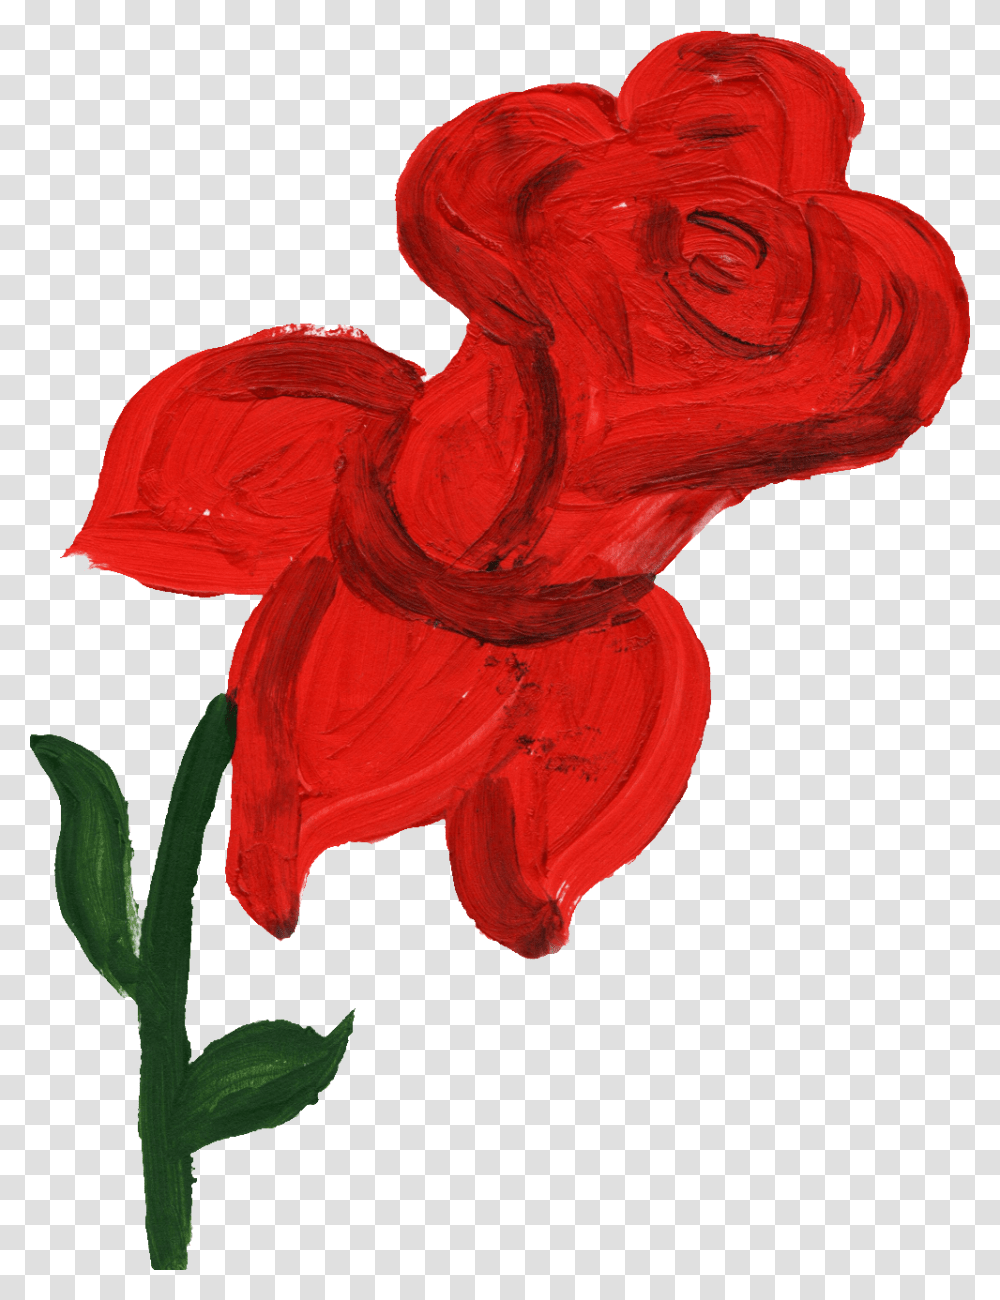 Rose Paint, Plant, Flower, Blossom, Petal Transparent Png